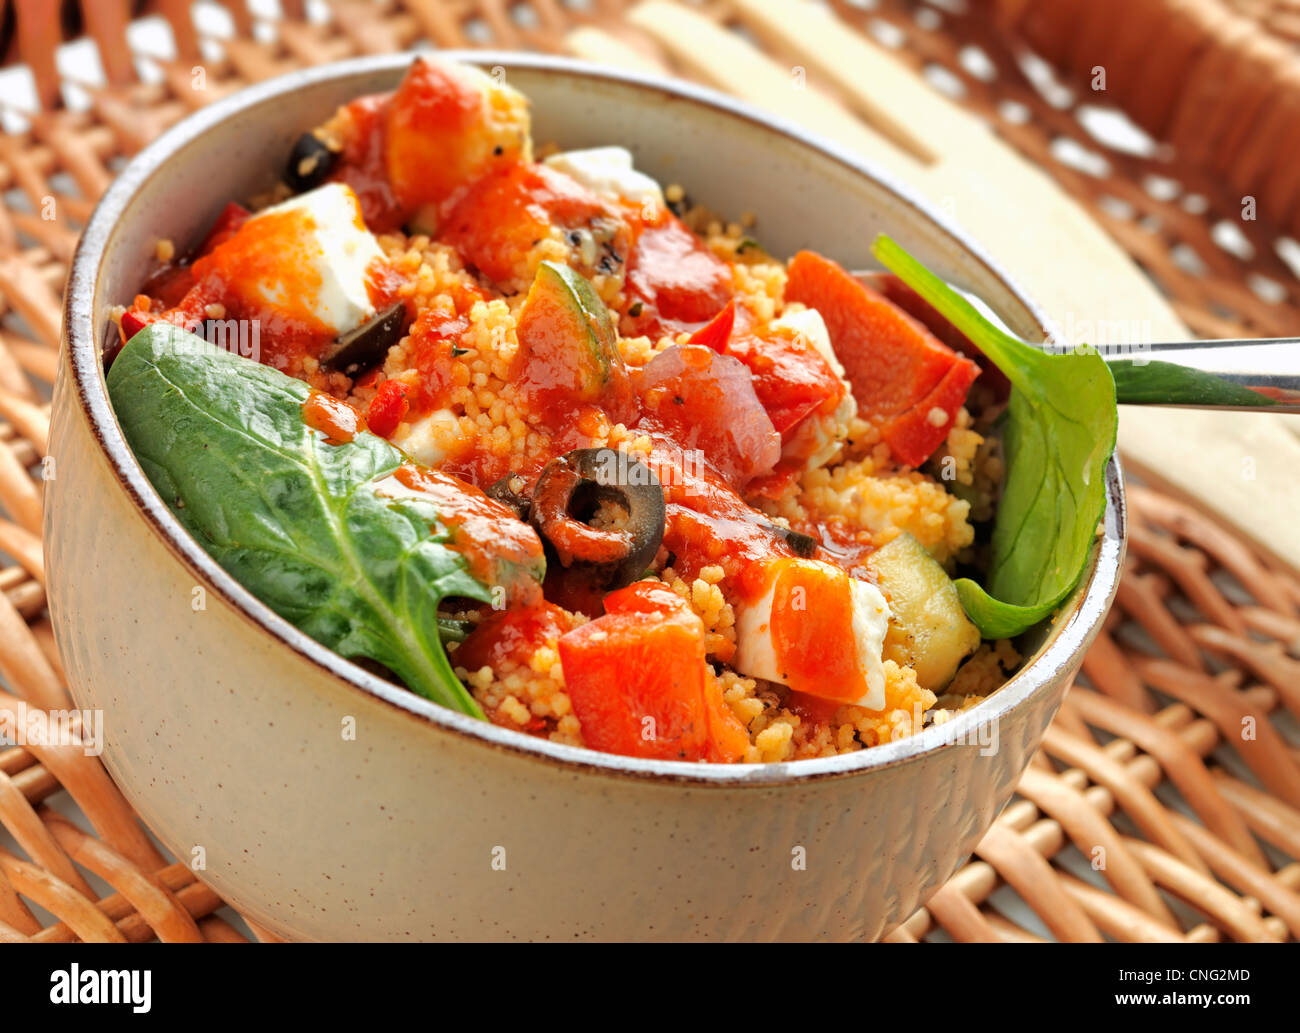 Salade méditerranéenne avec des légumes cuits au feu et d'épinards avec vinaigrette balsamique Banque D'Images